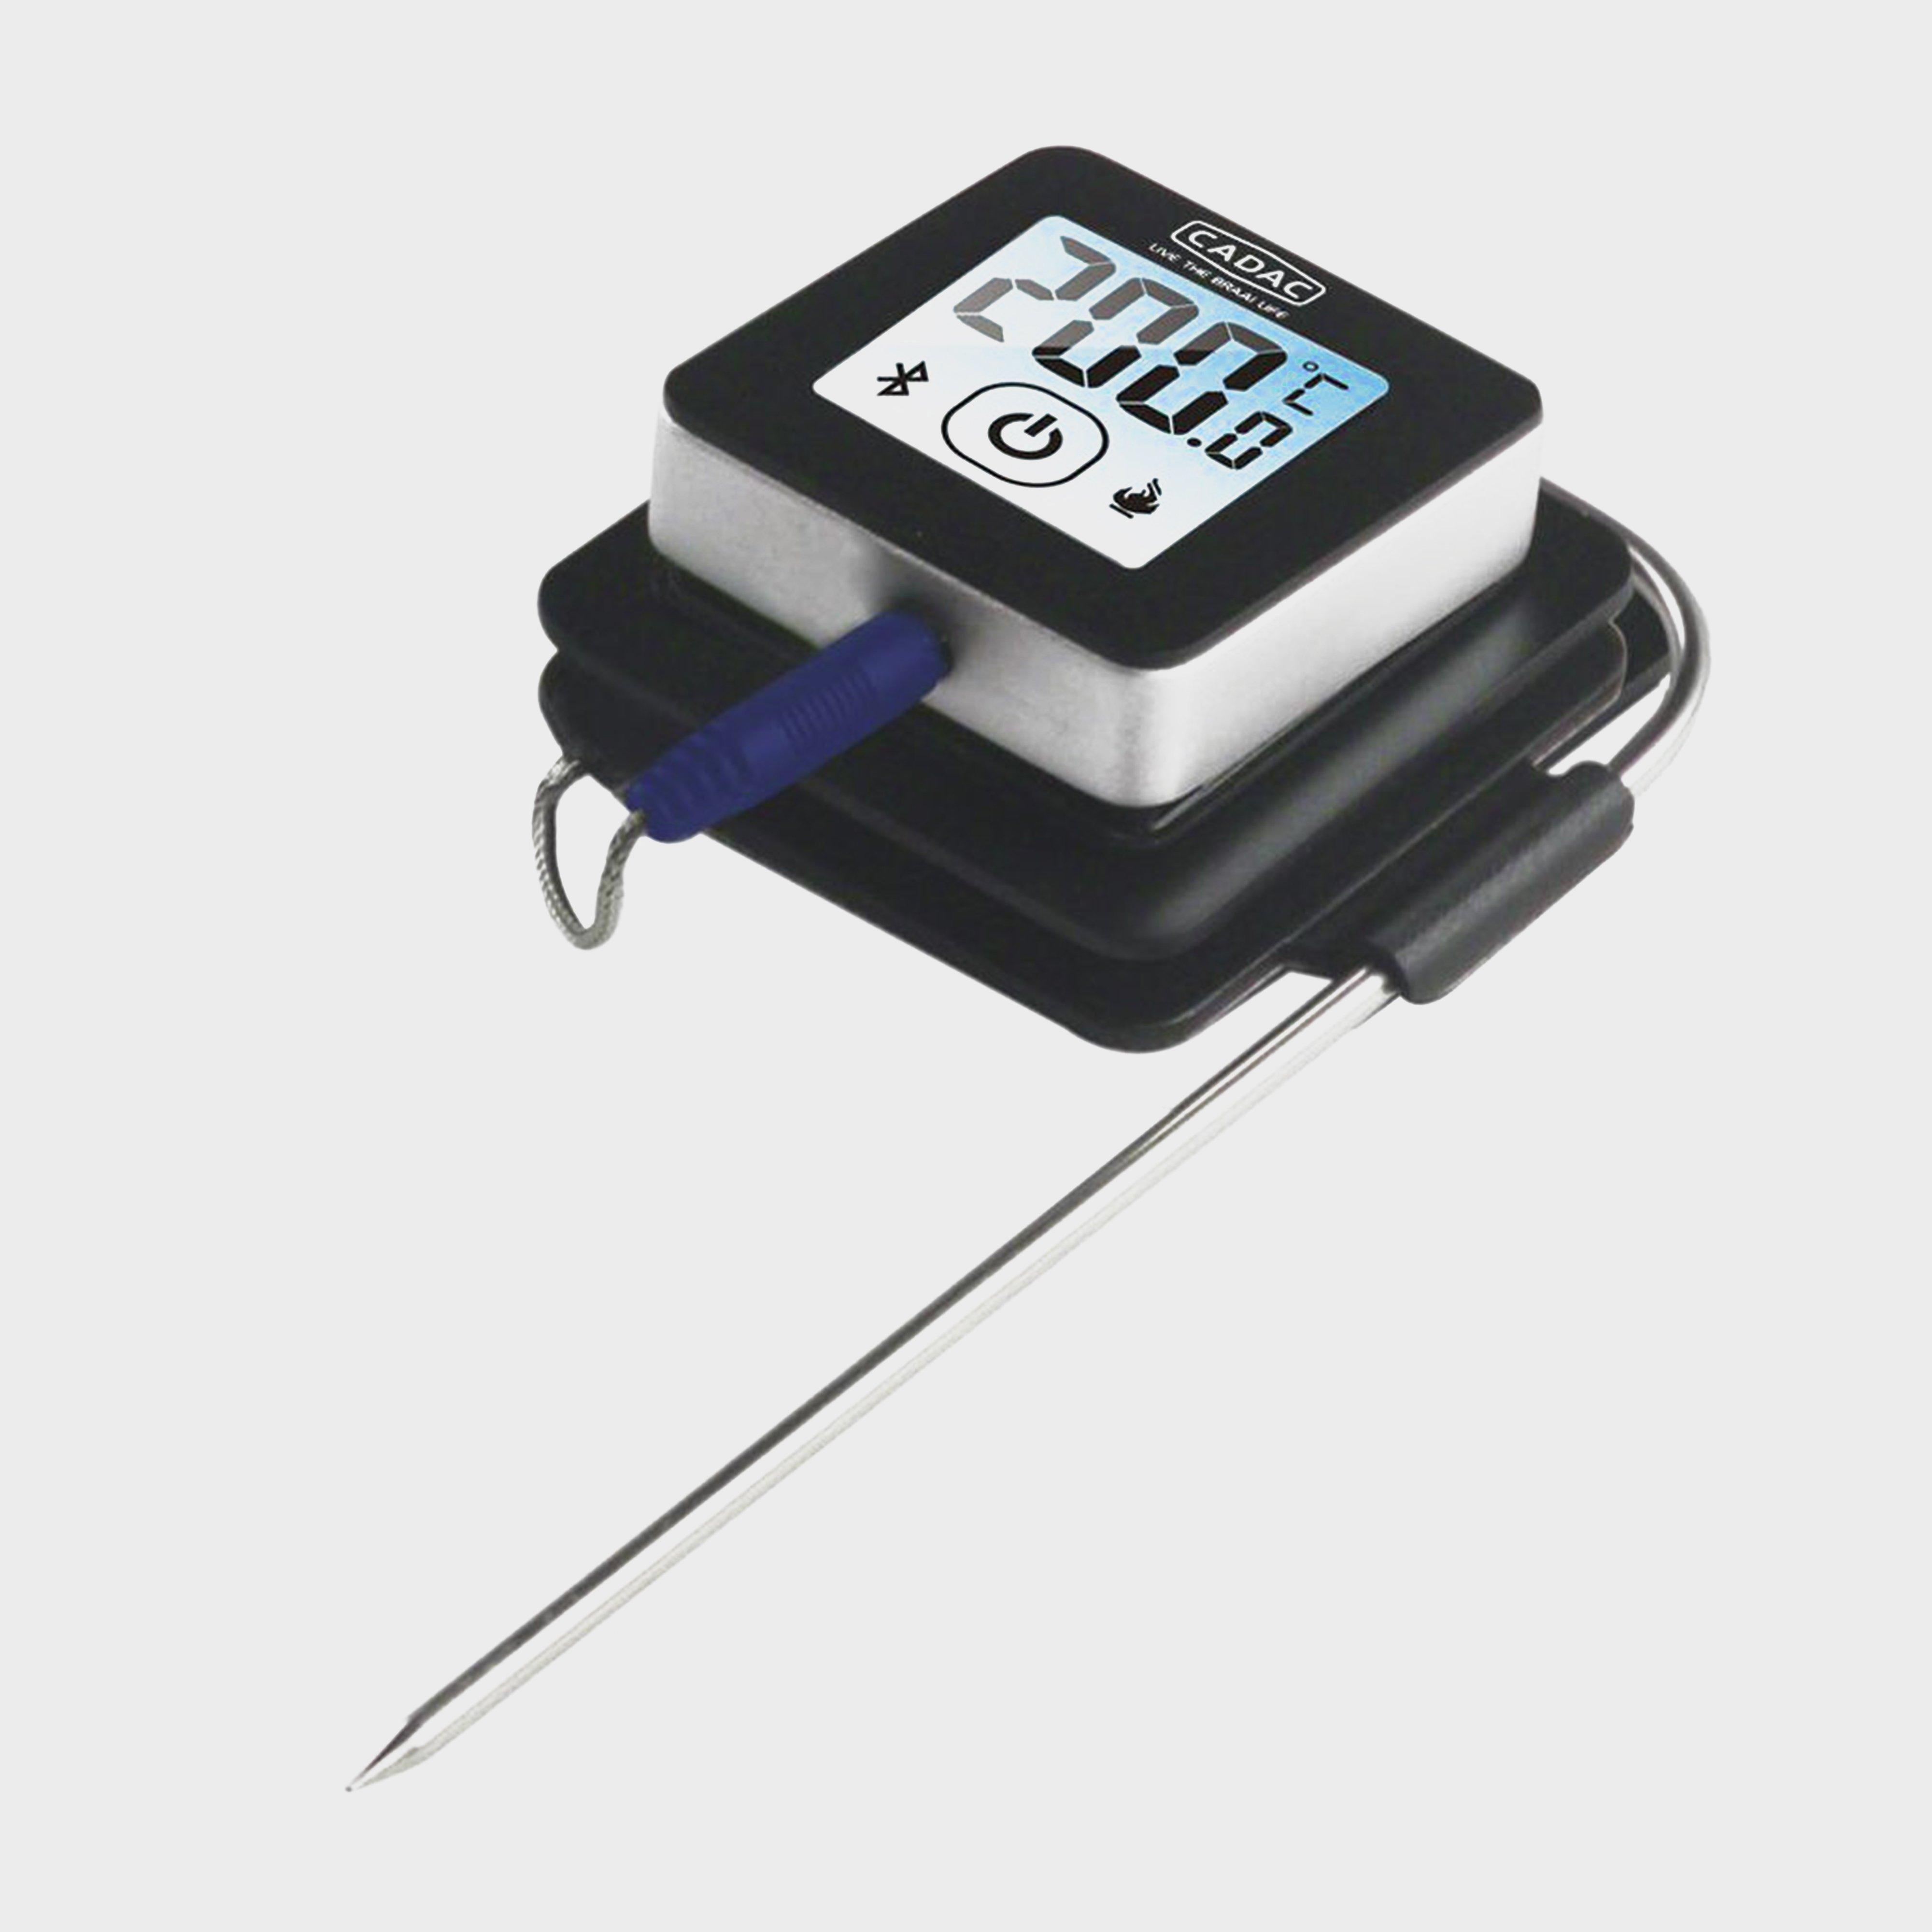 Cadac I-braii Bluetooth Food Thermometer - No/no  No/no